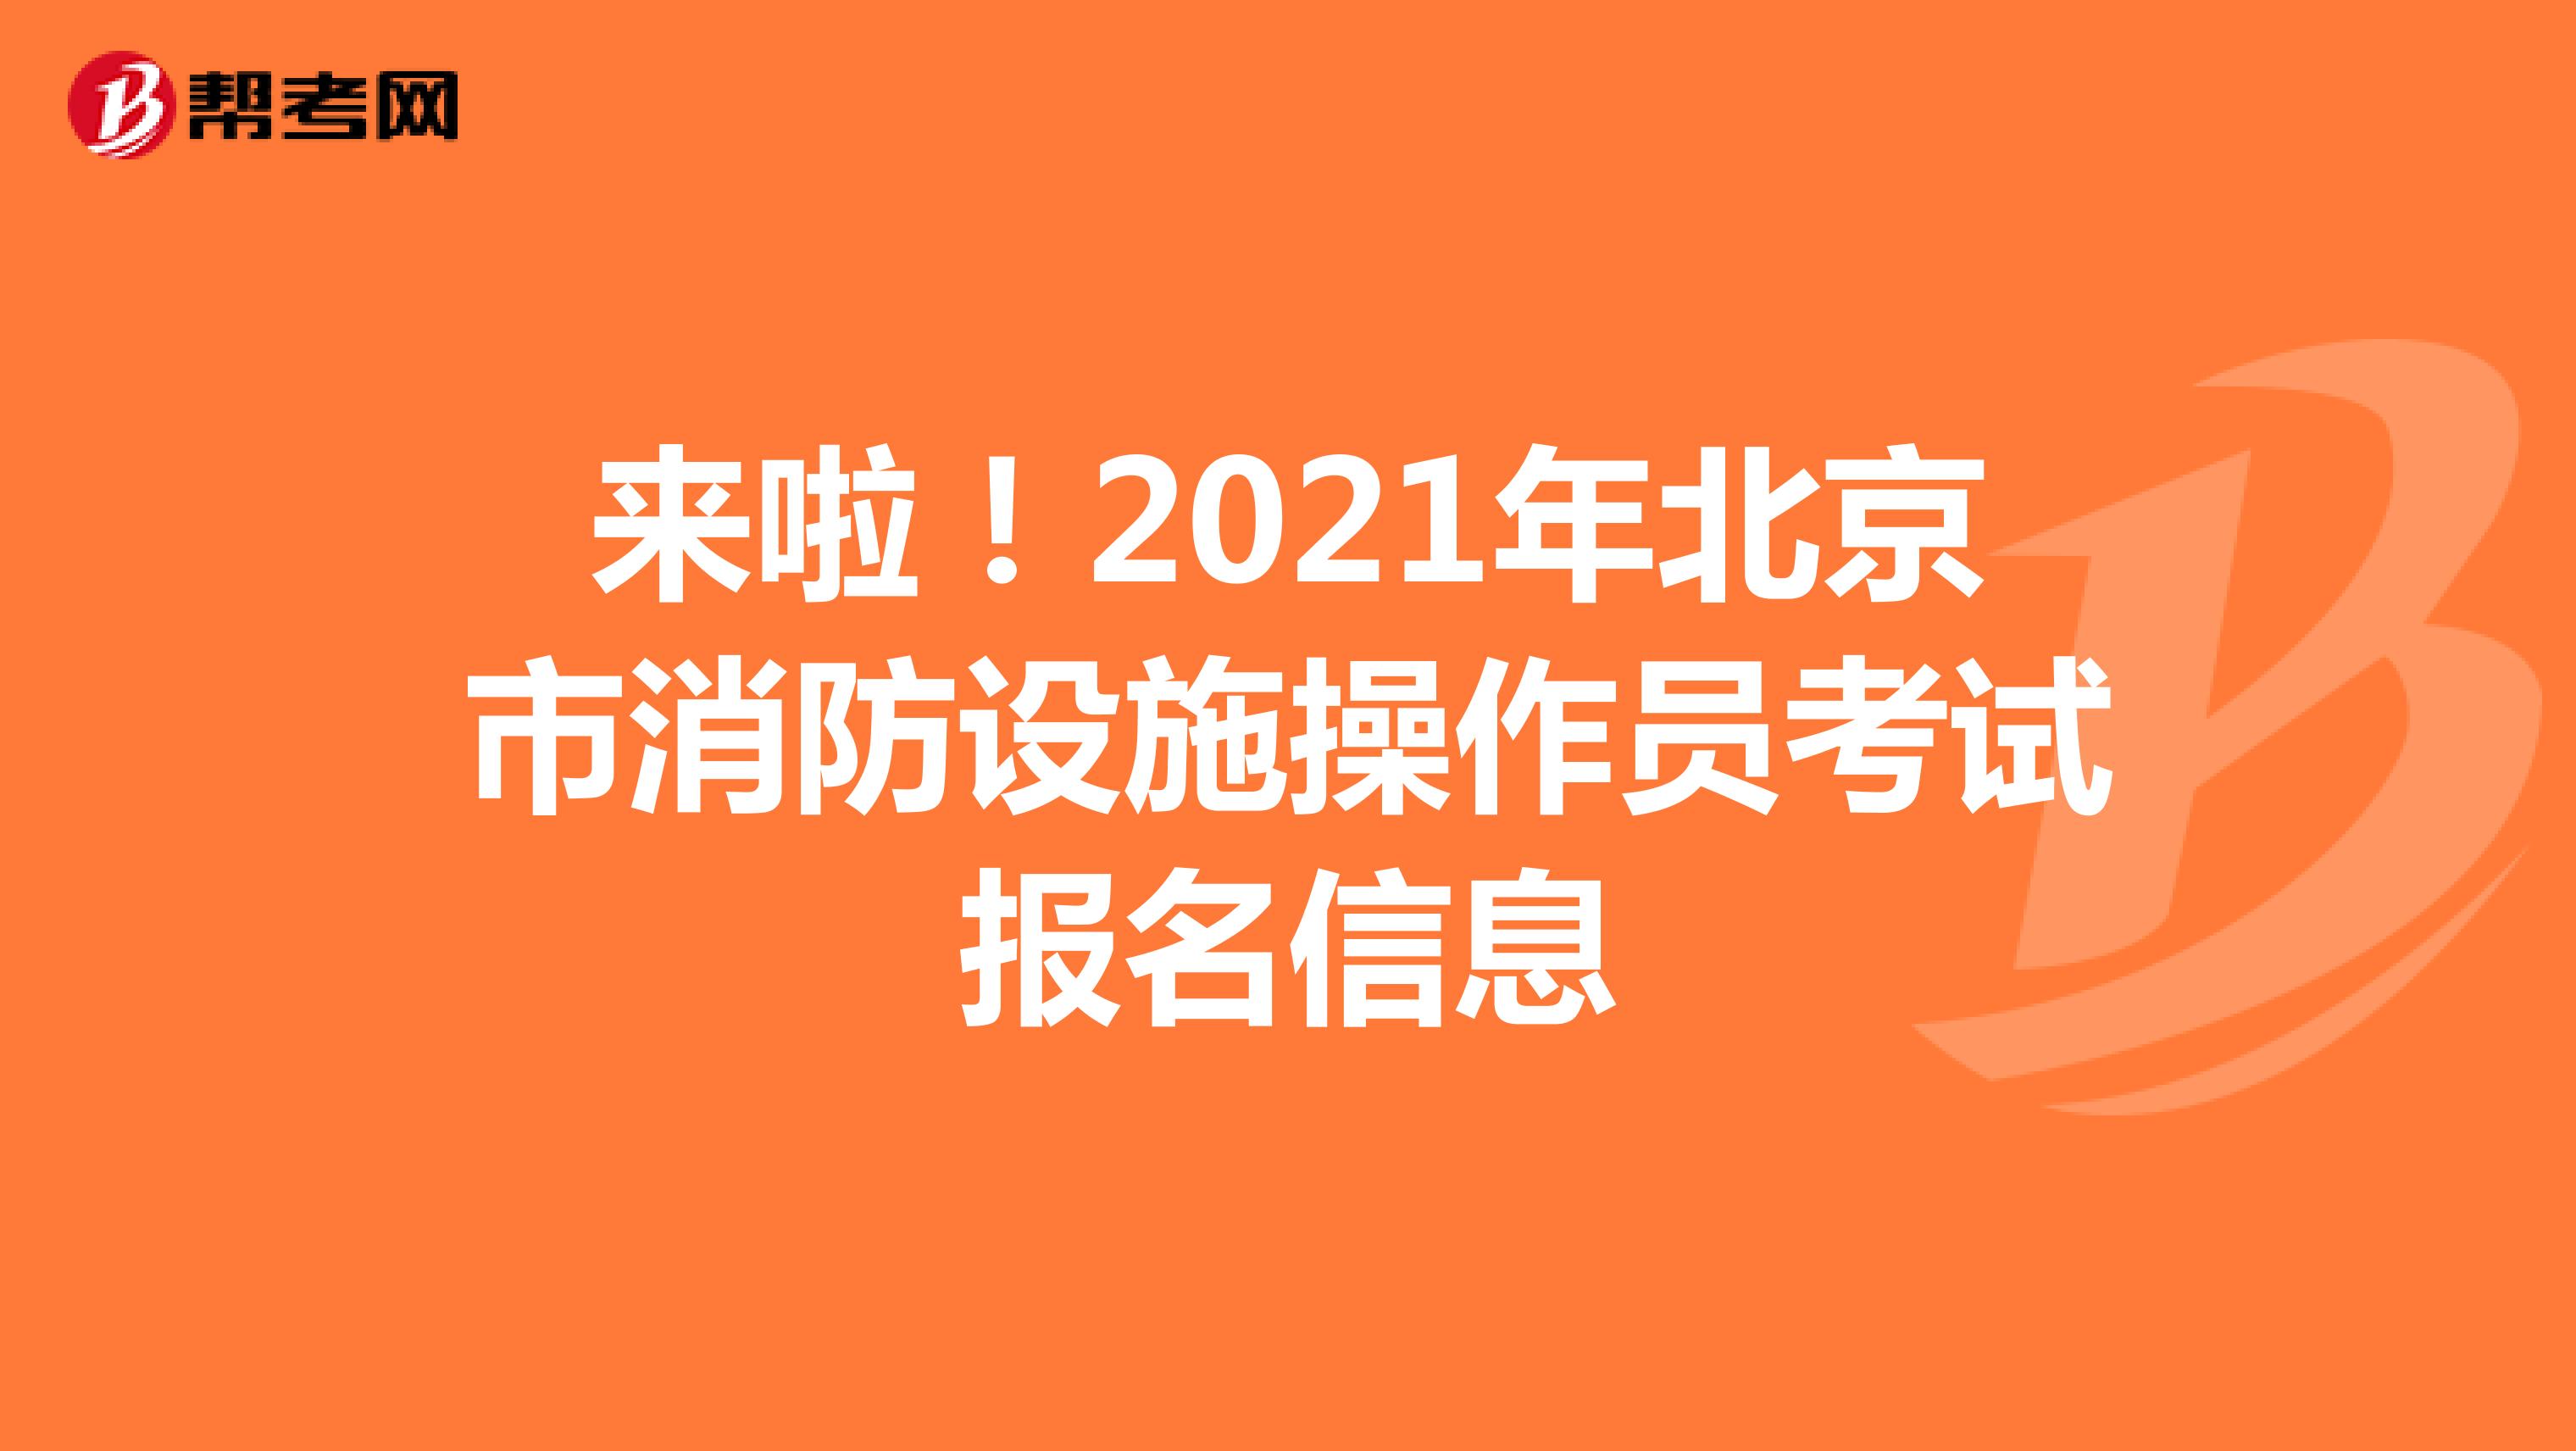 来啦！2021年北京市消防设施操作员考试报名信息